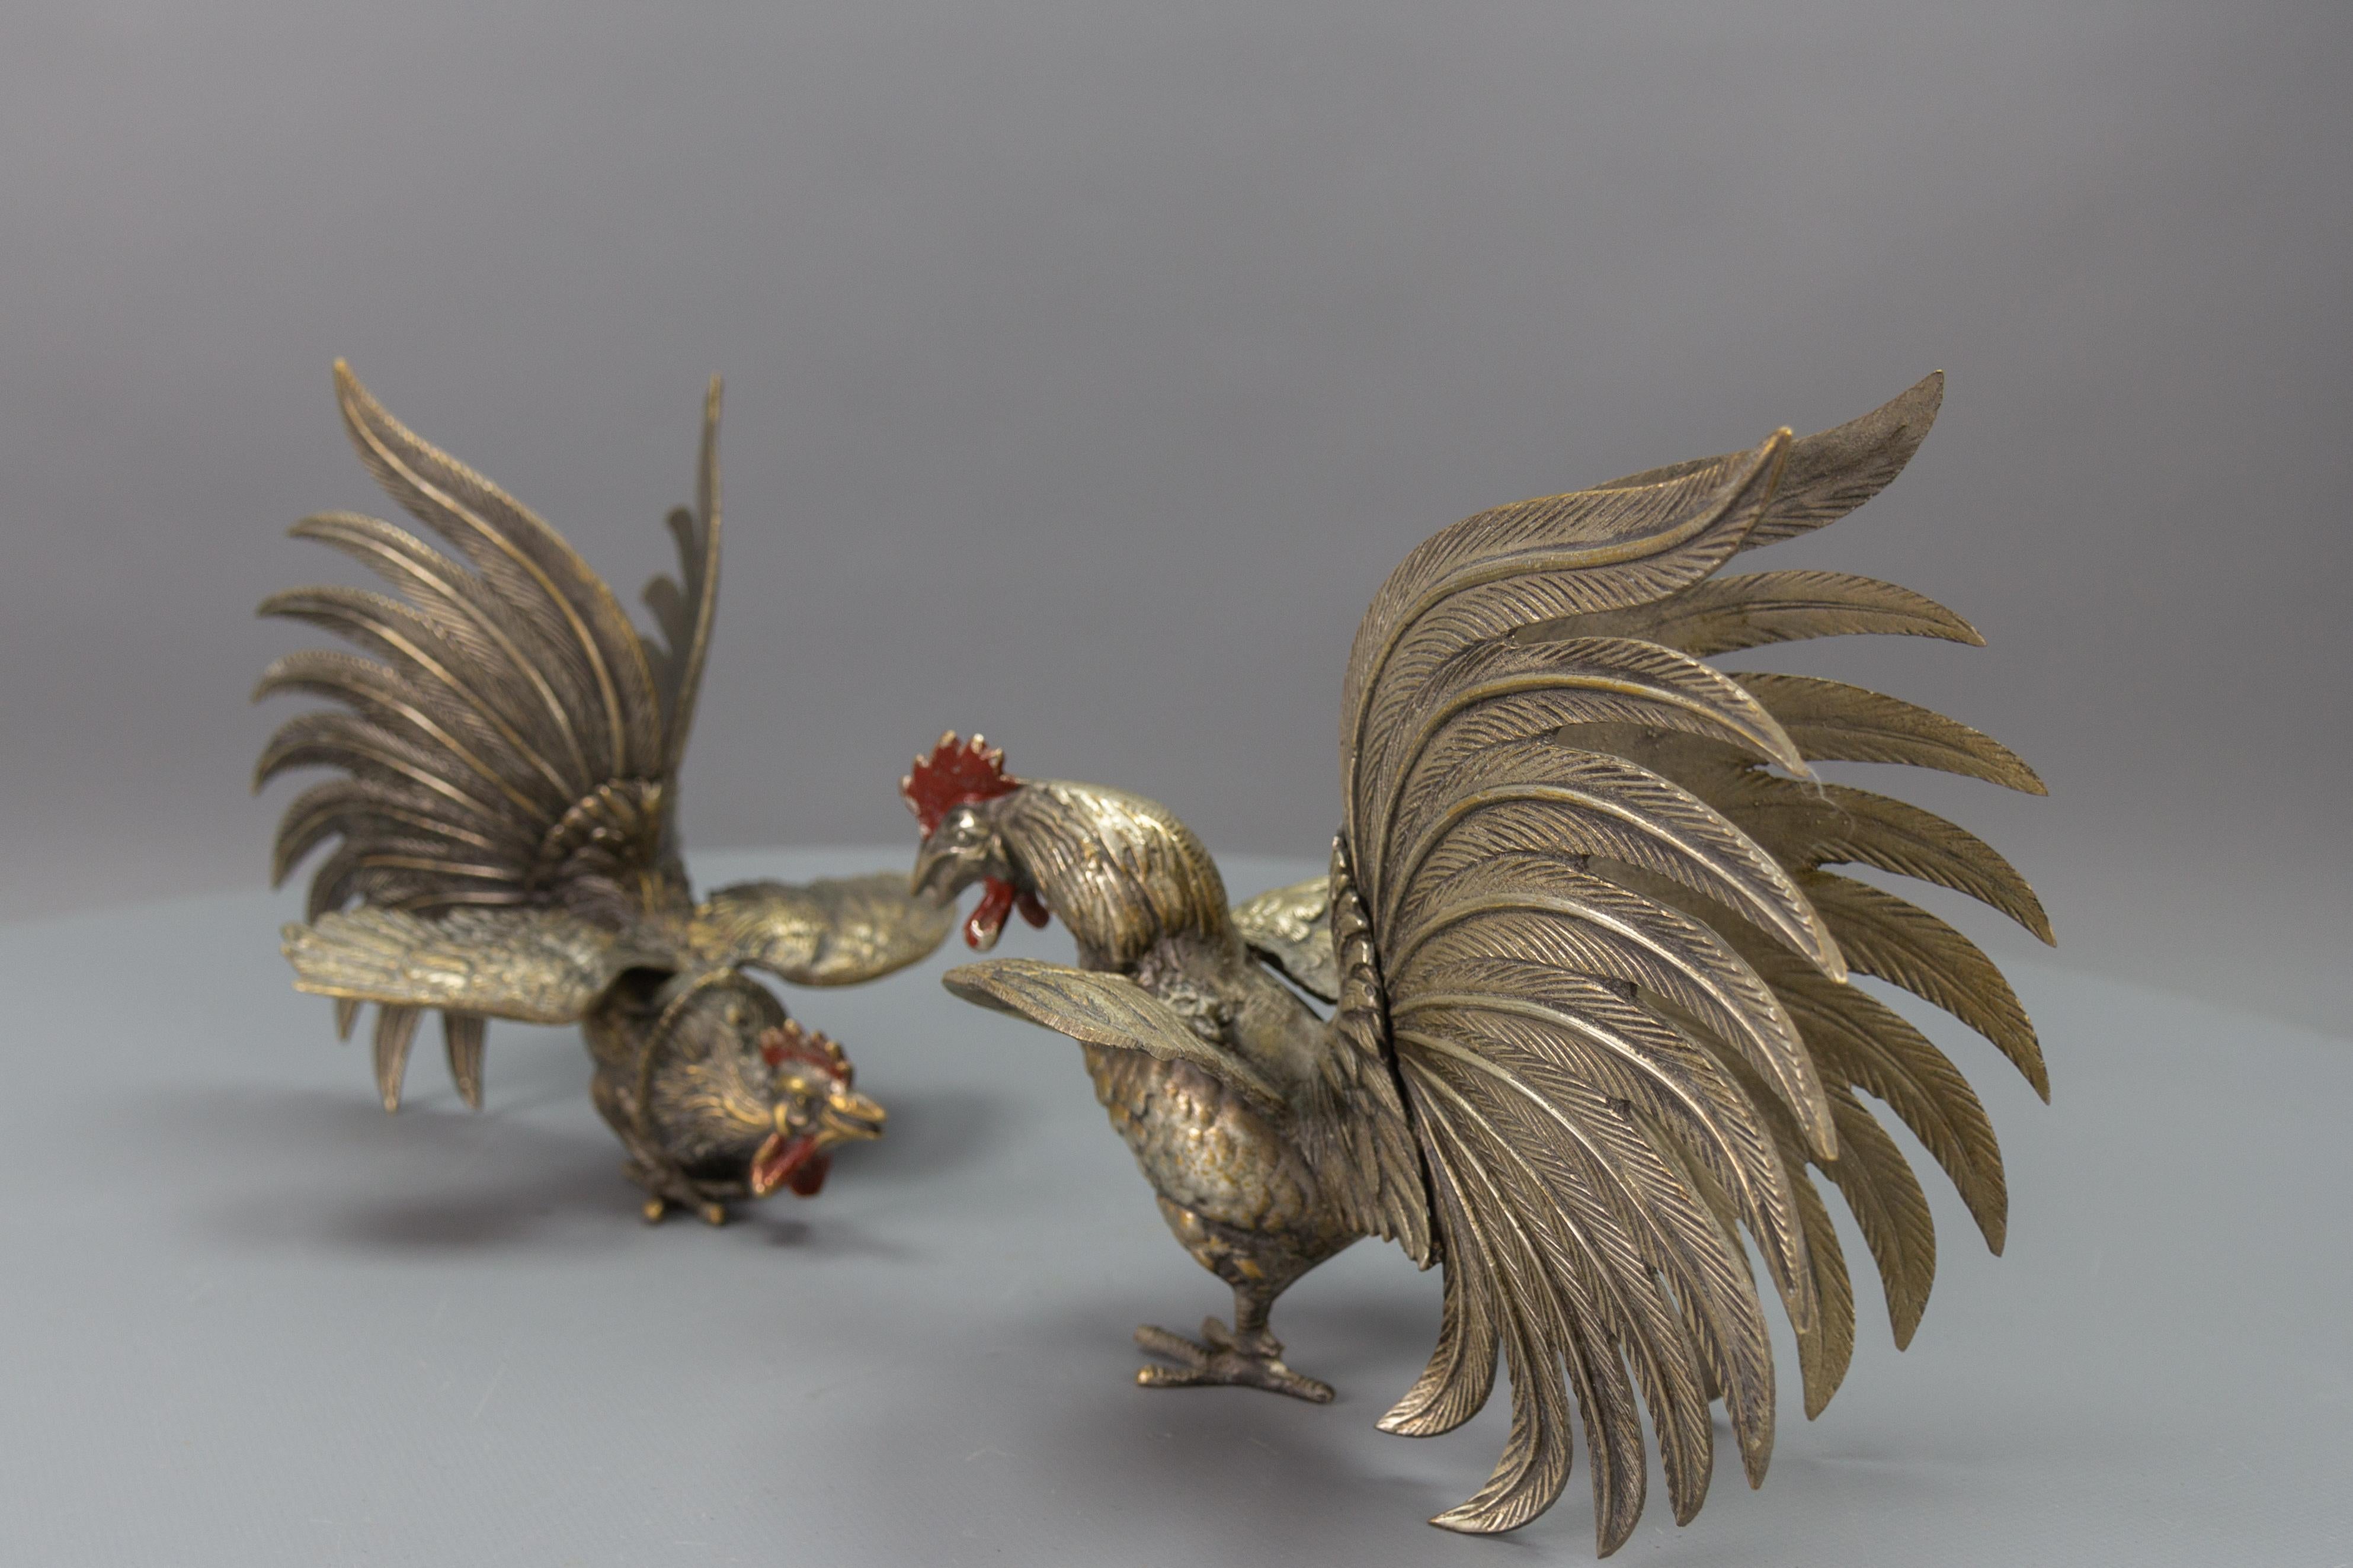 Paar Bronzeskulpturen von kämpfenden Hähnen, Japan, ca. 1950er Jahre
Ein Paar wunderschön und lebensecht modellierter Bronzehähne mit rot bemalten Hahnenkämmen und Kehllappen. Diese beeindruckenden Vogelskulpturen stellen einen Kampf zwischen zwei